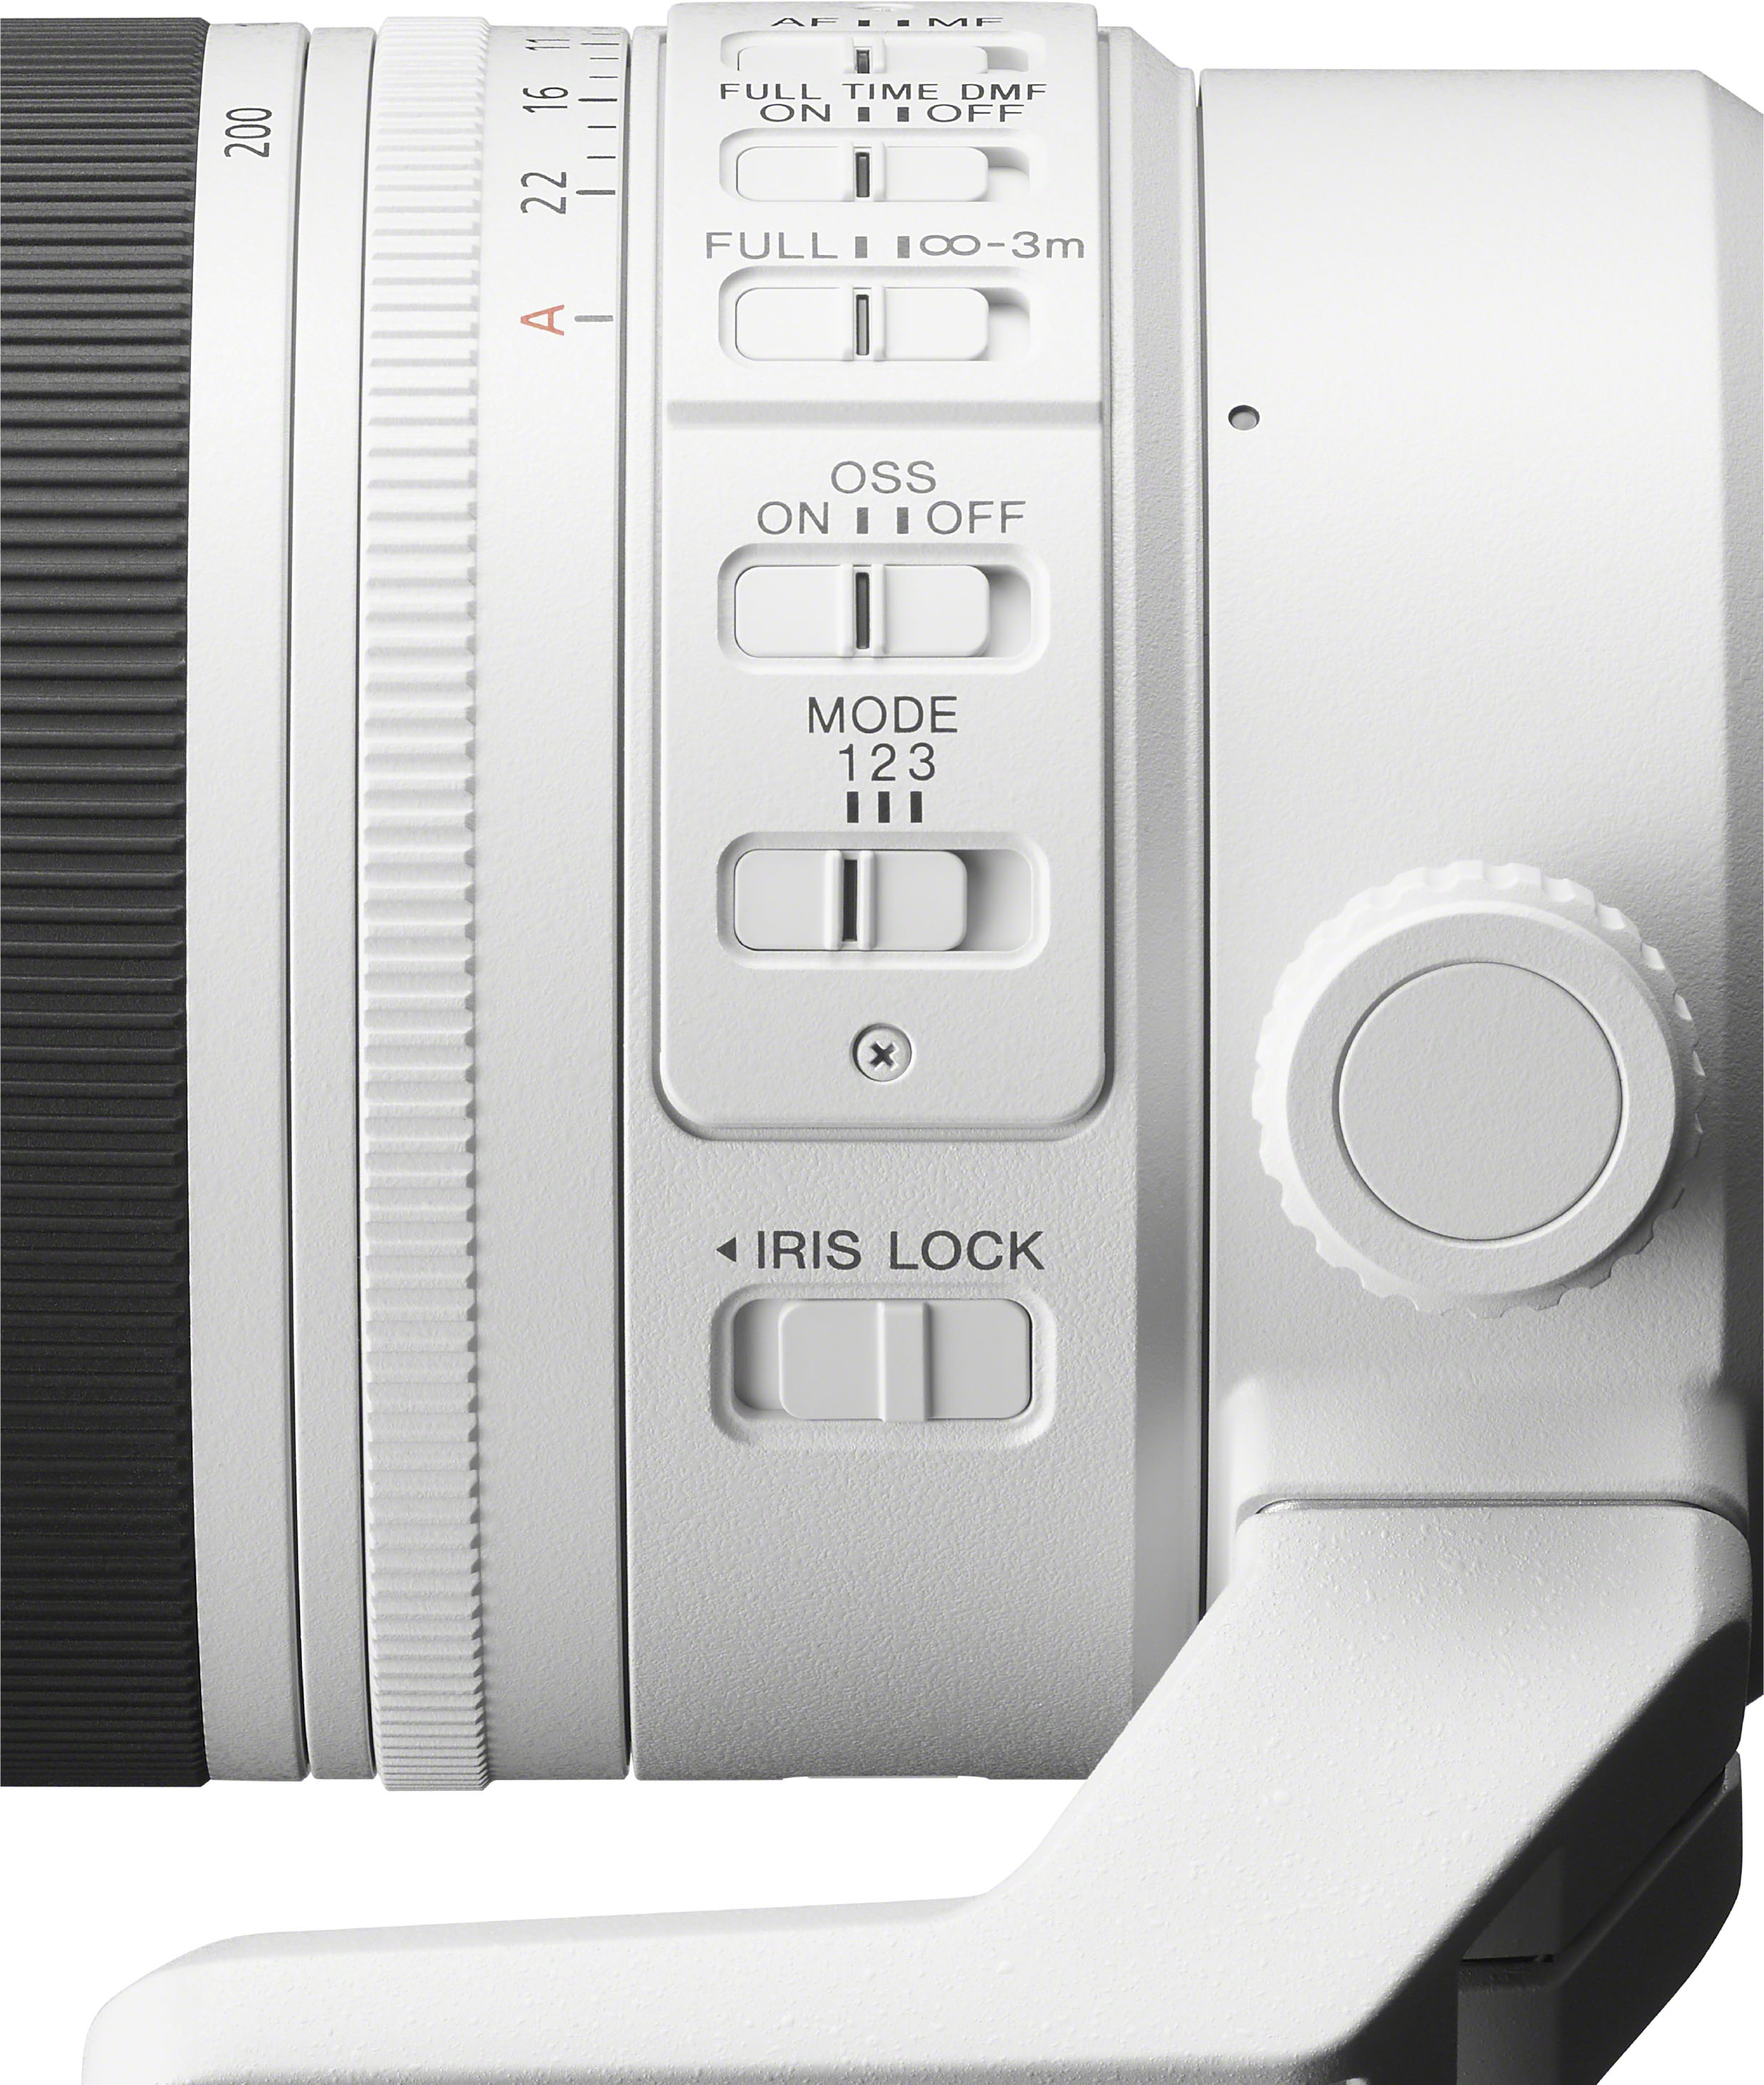 Sony FX30 Digital Cinema Camera w/ FE 24-70mm f/2.8 GM II & FE 70-200mm  f/2.8 GM OSS II Lenses